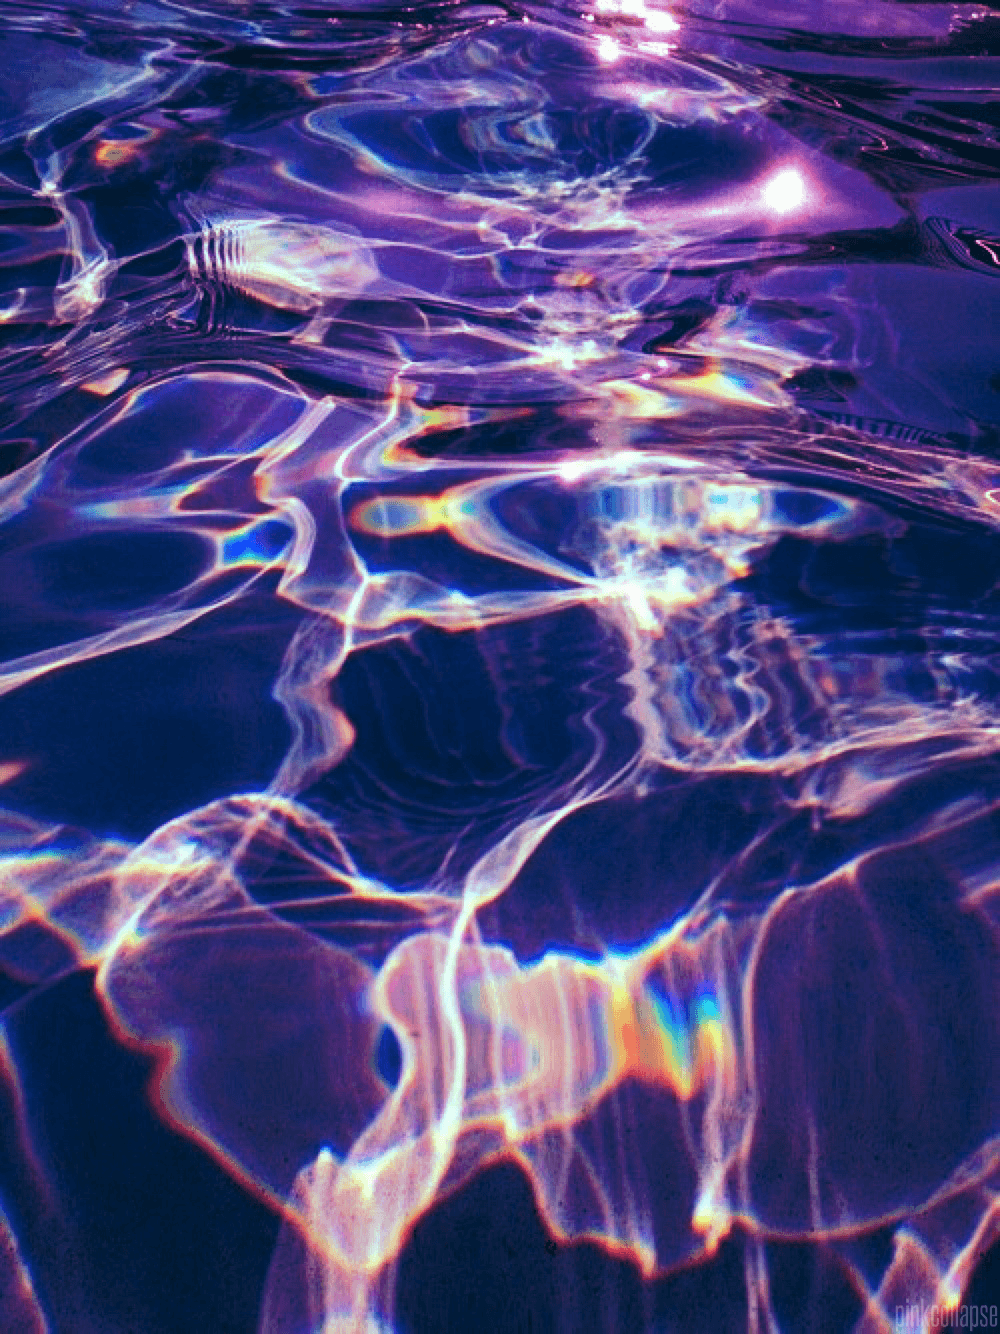 Purple Water Wallpaper